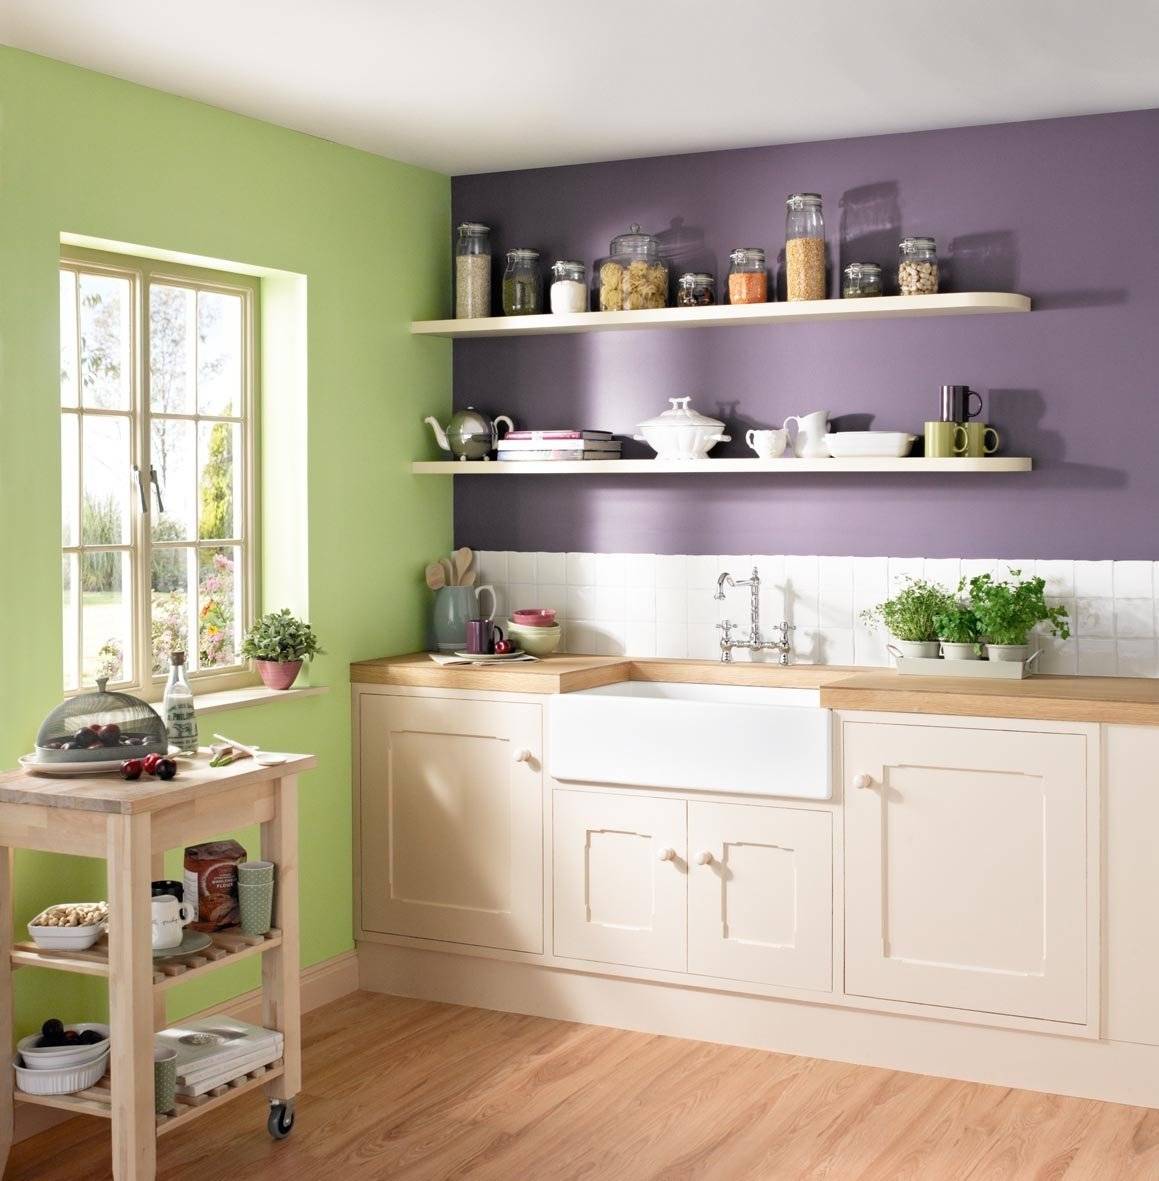 Покраска и выбор материалов для стен на кухне своими руками